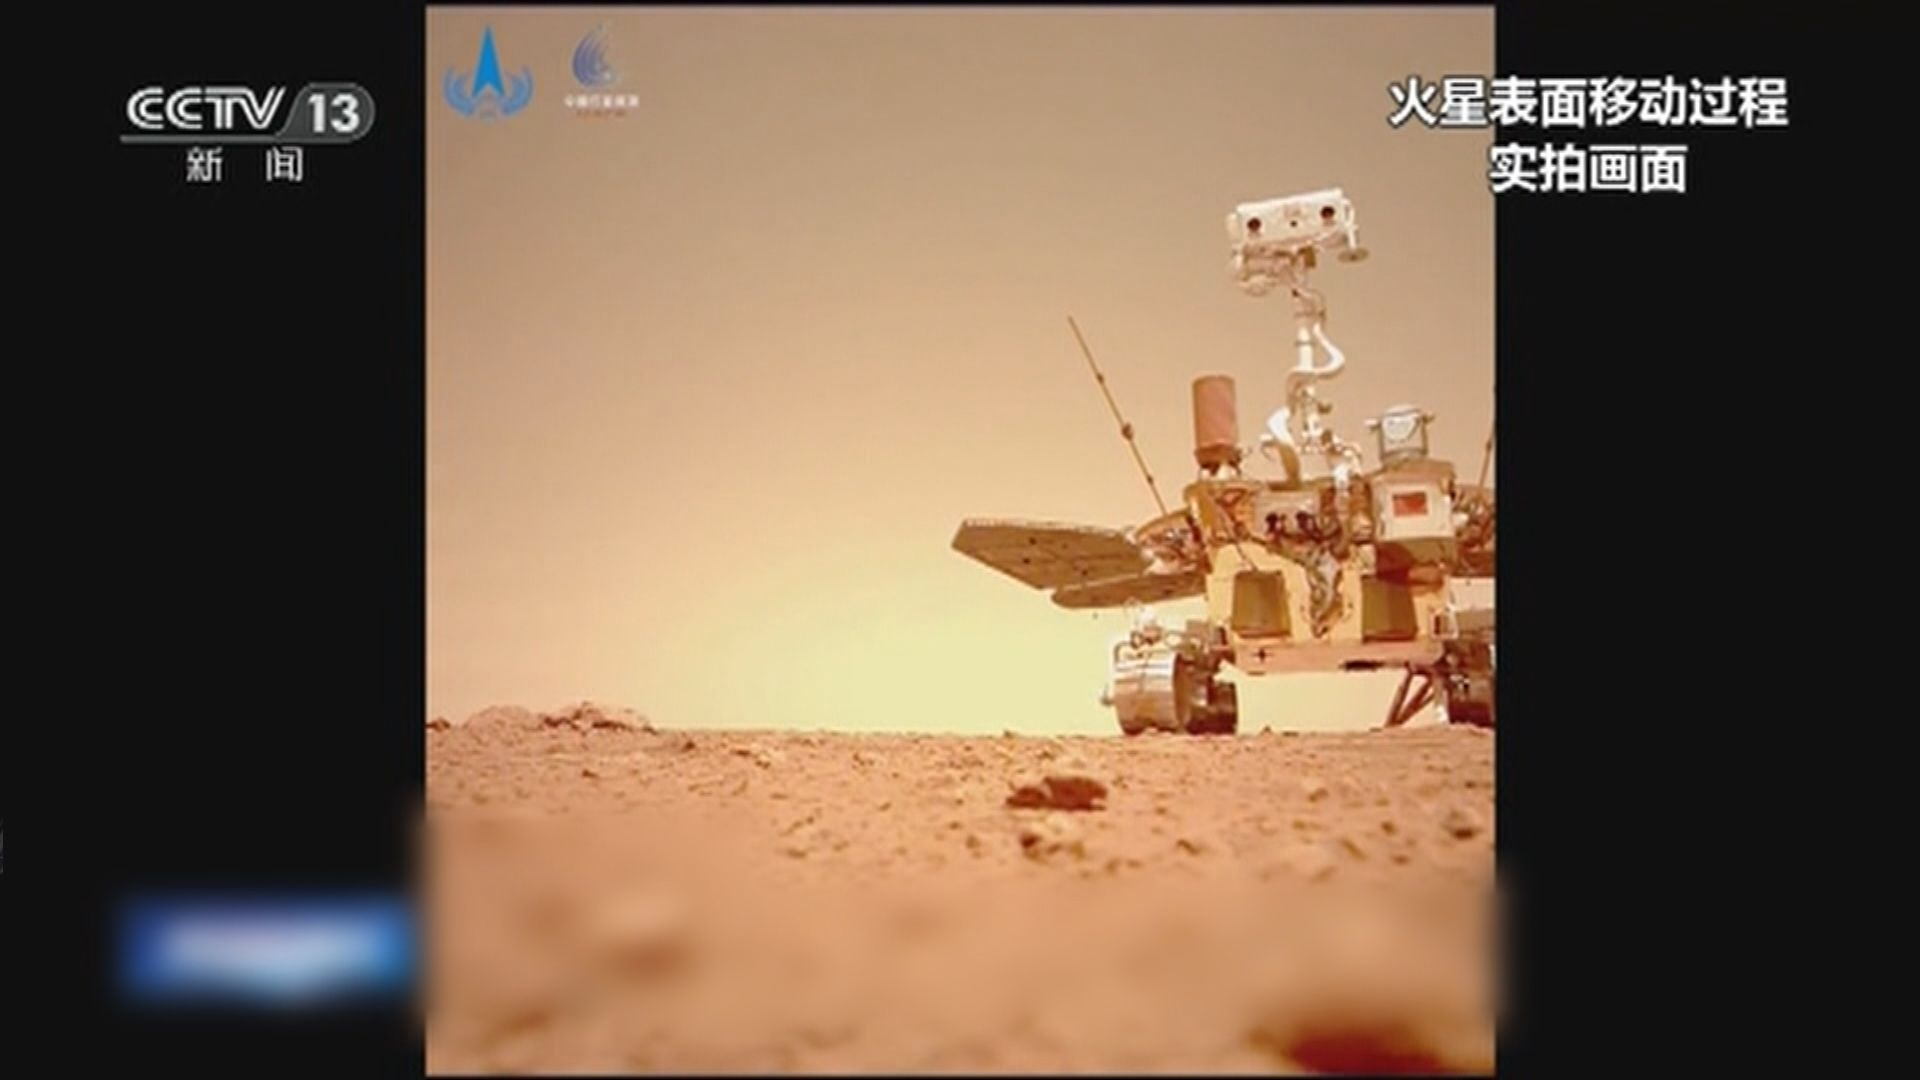 國家航天局公布火星任務實拍影像及聲音數據